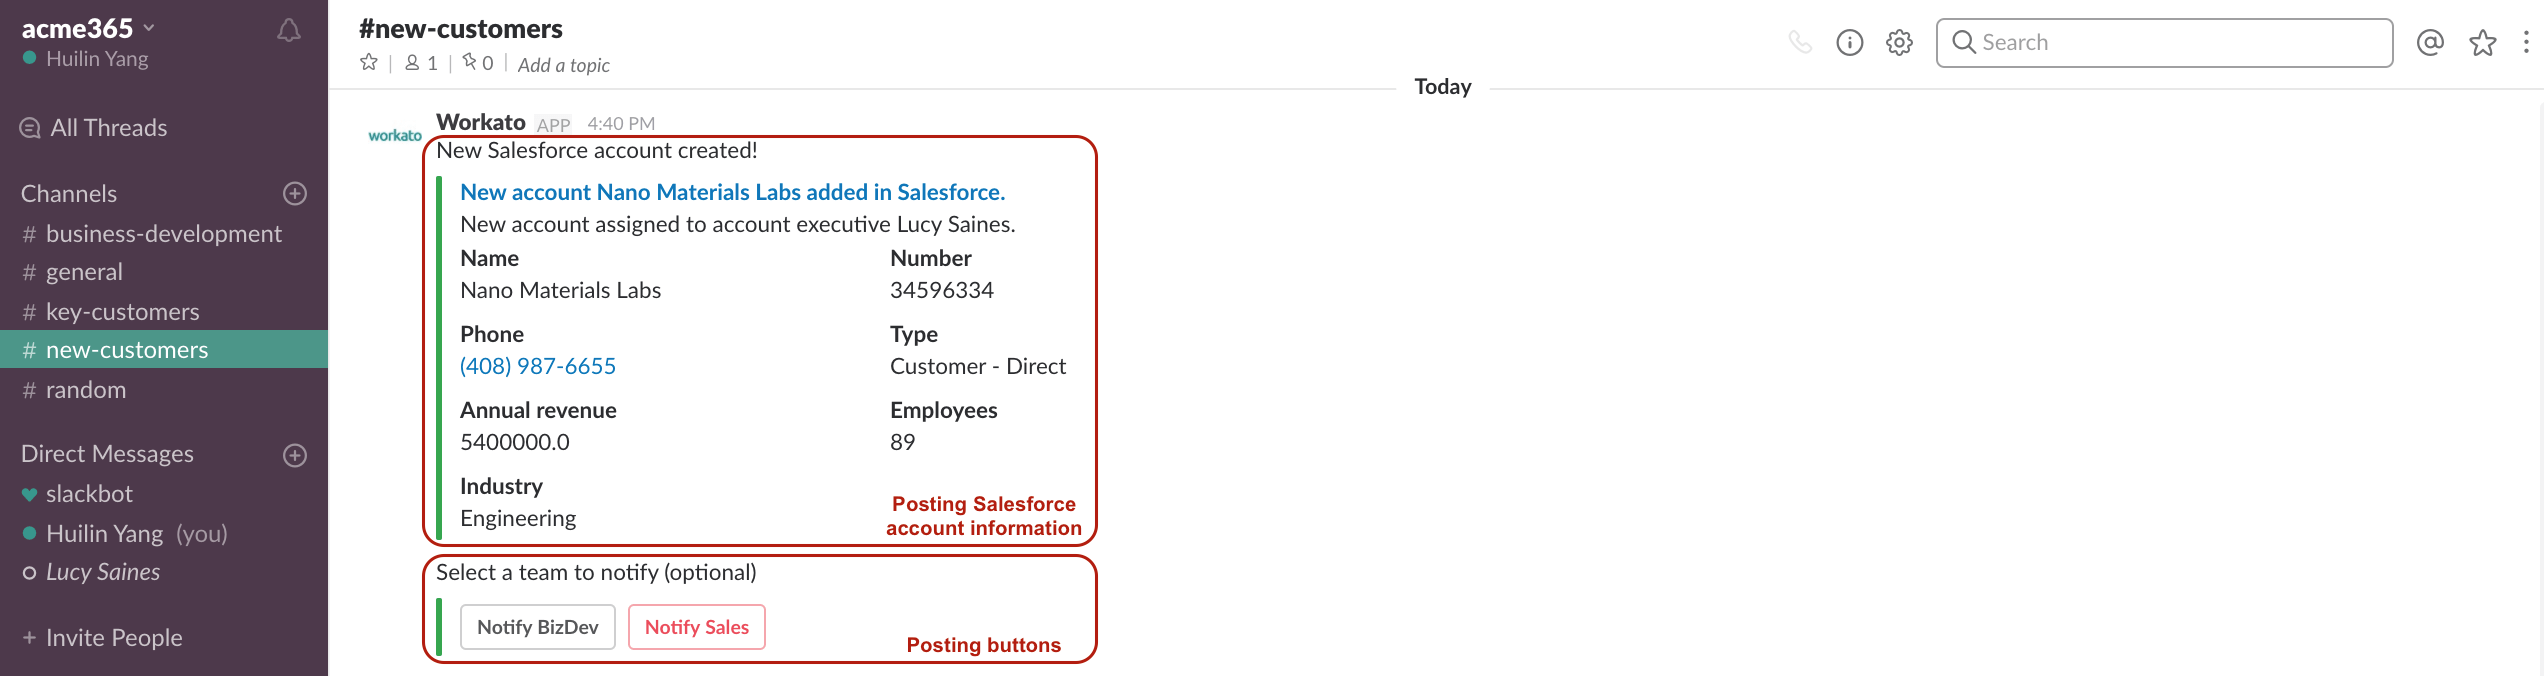 別々のアクションを通じて投稿された Salesforce アカウントの情報とボタン